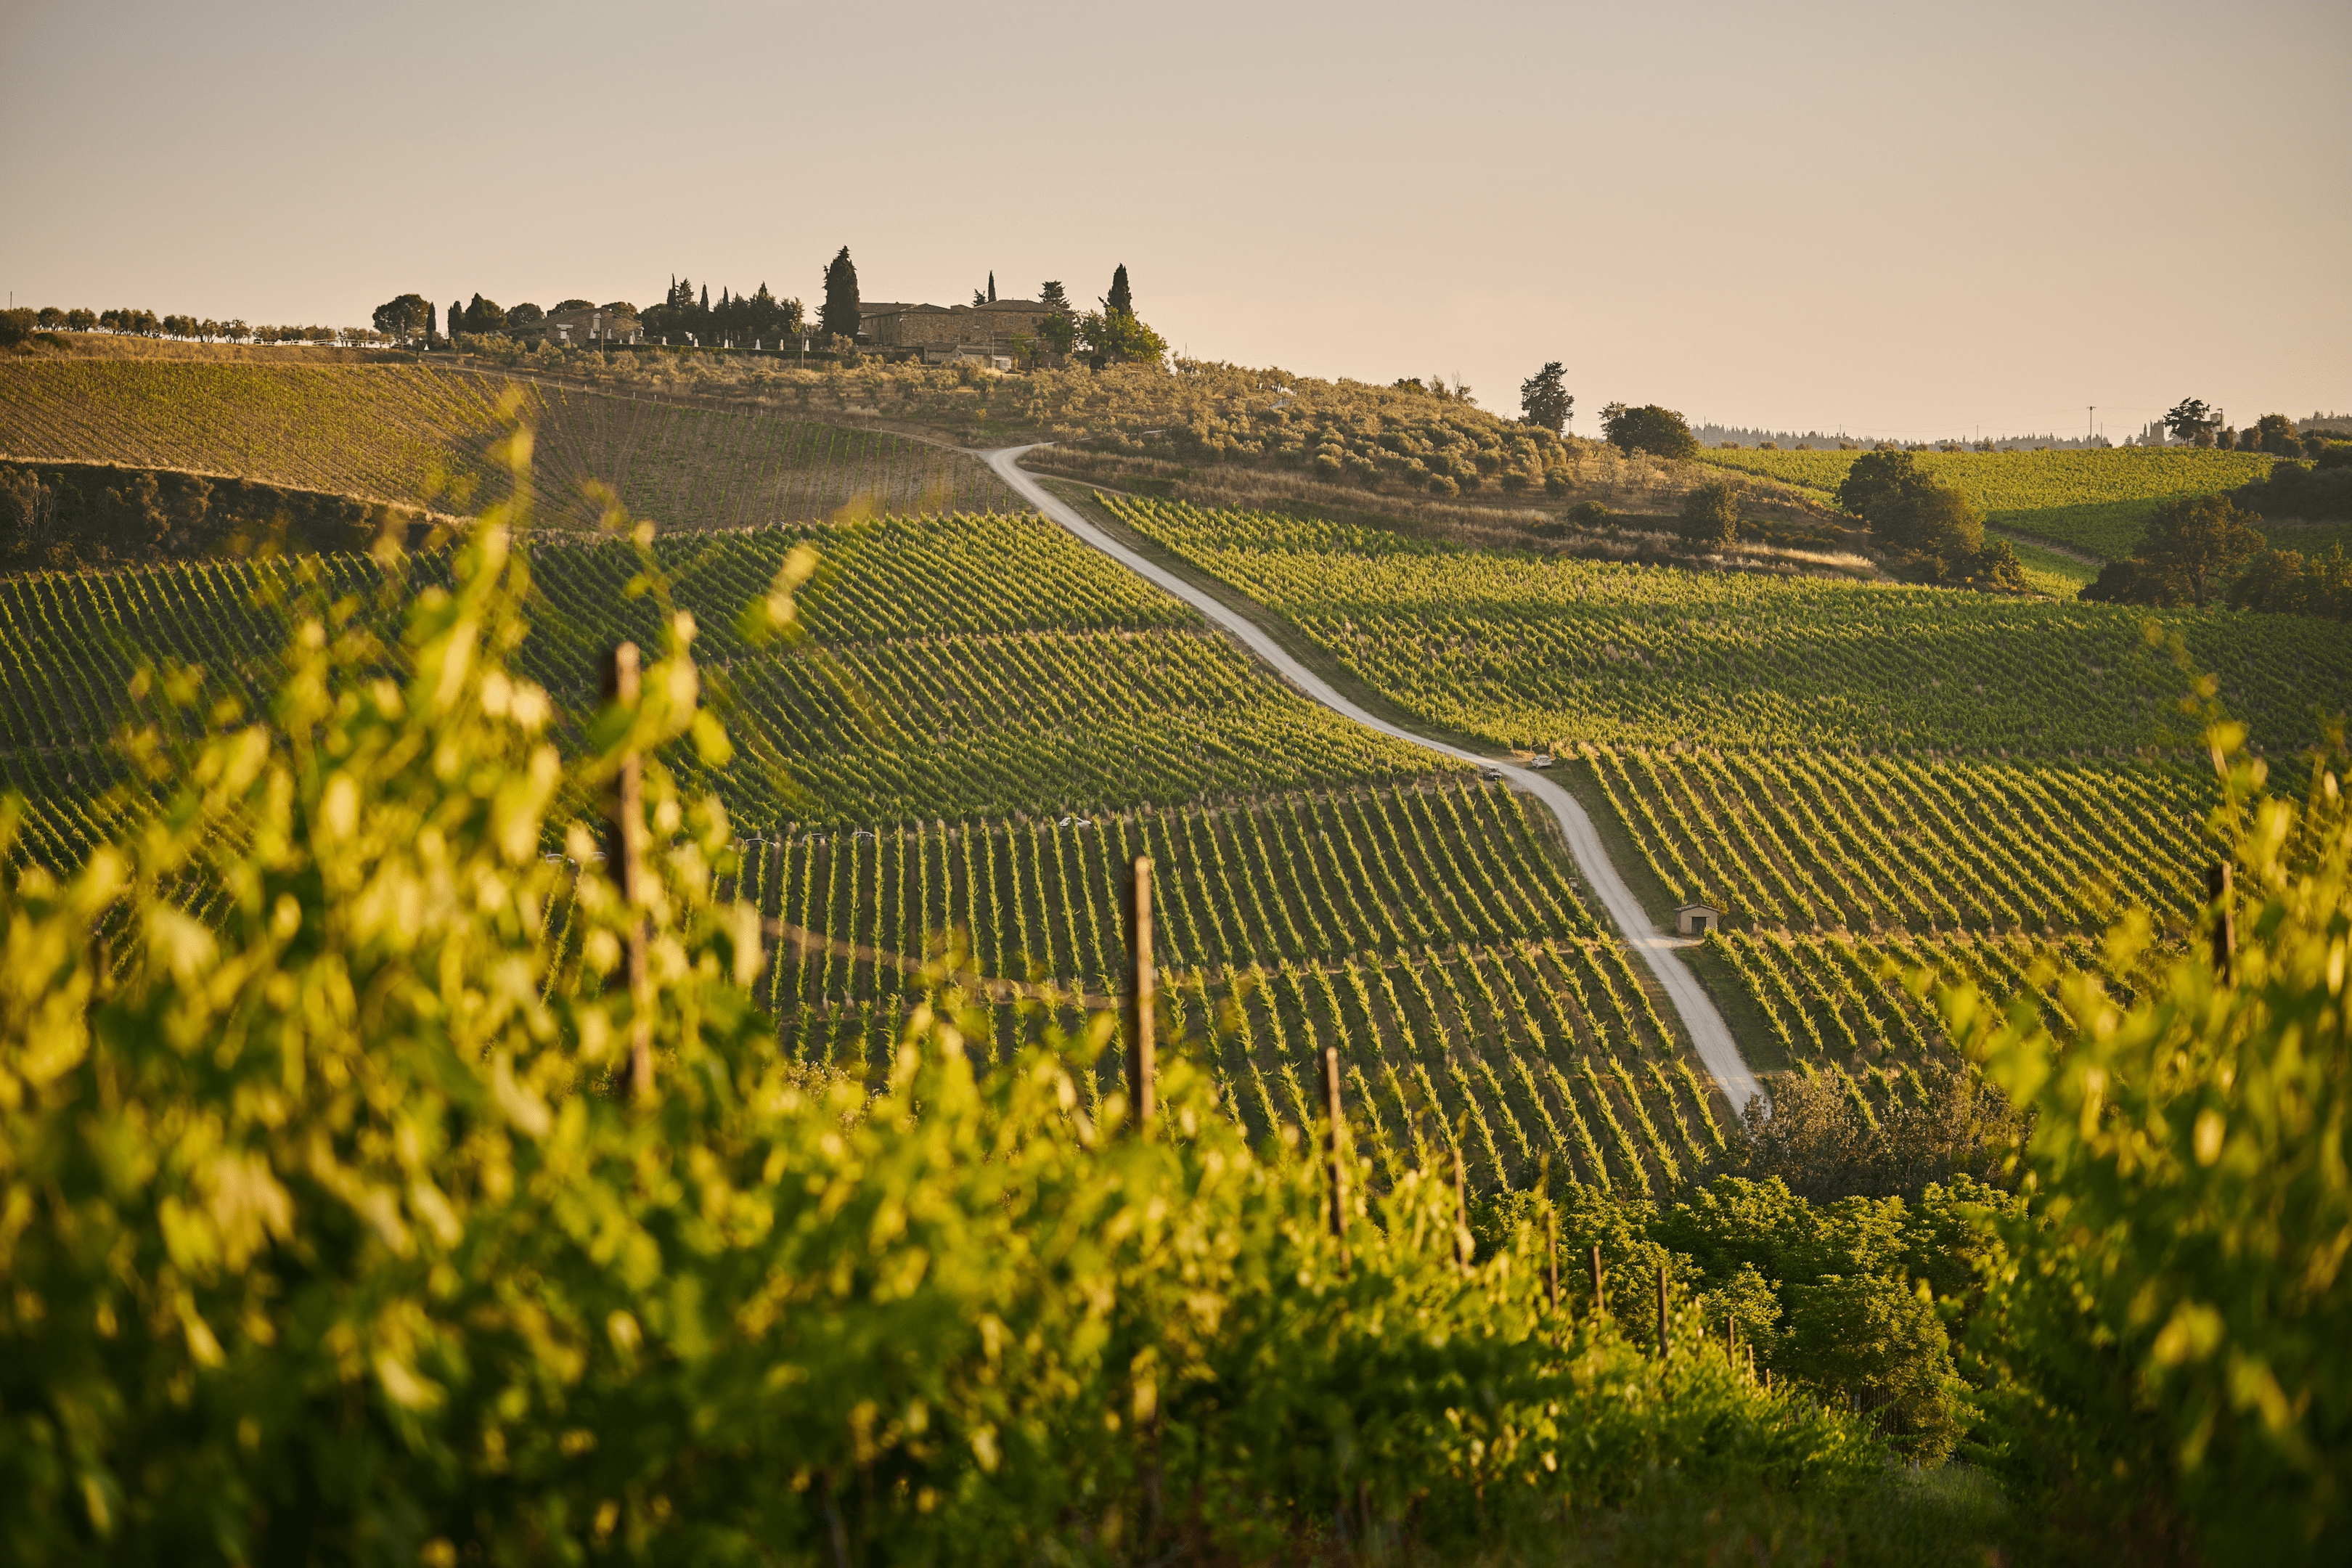 Italian wine fields